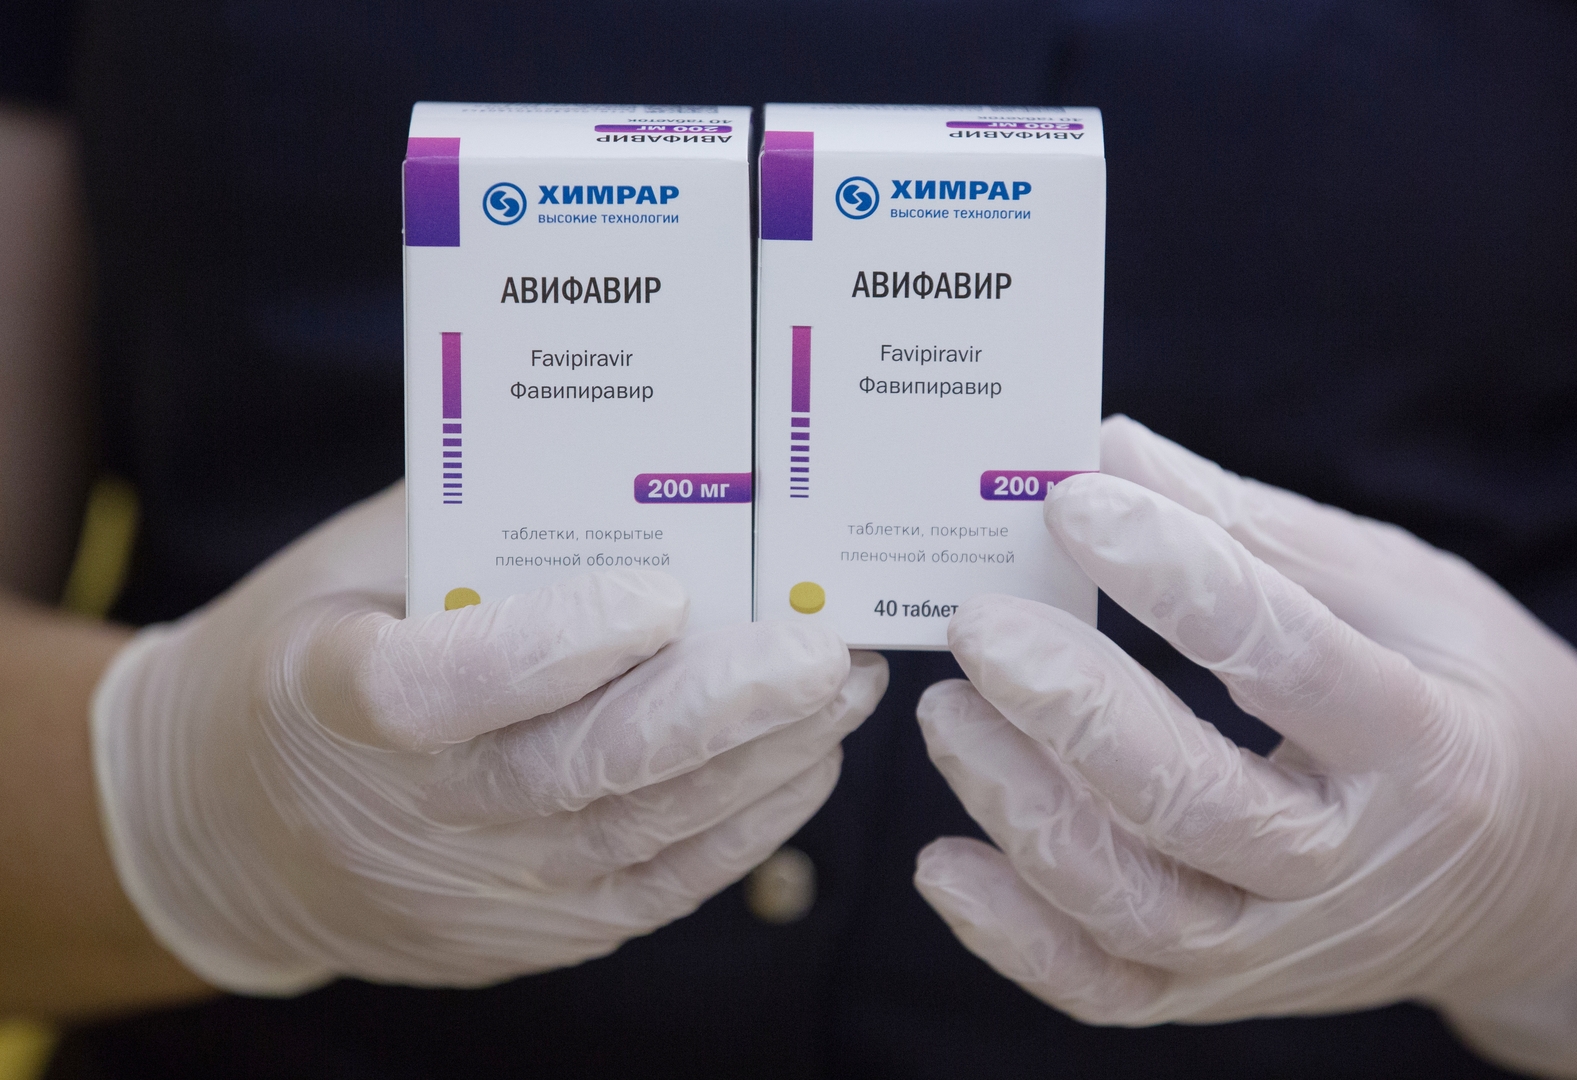 روسيا تصدر الأدوية لعلاج كورونا إلى 15 بلدا